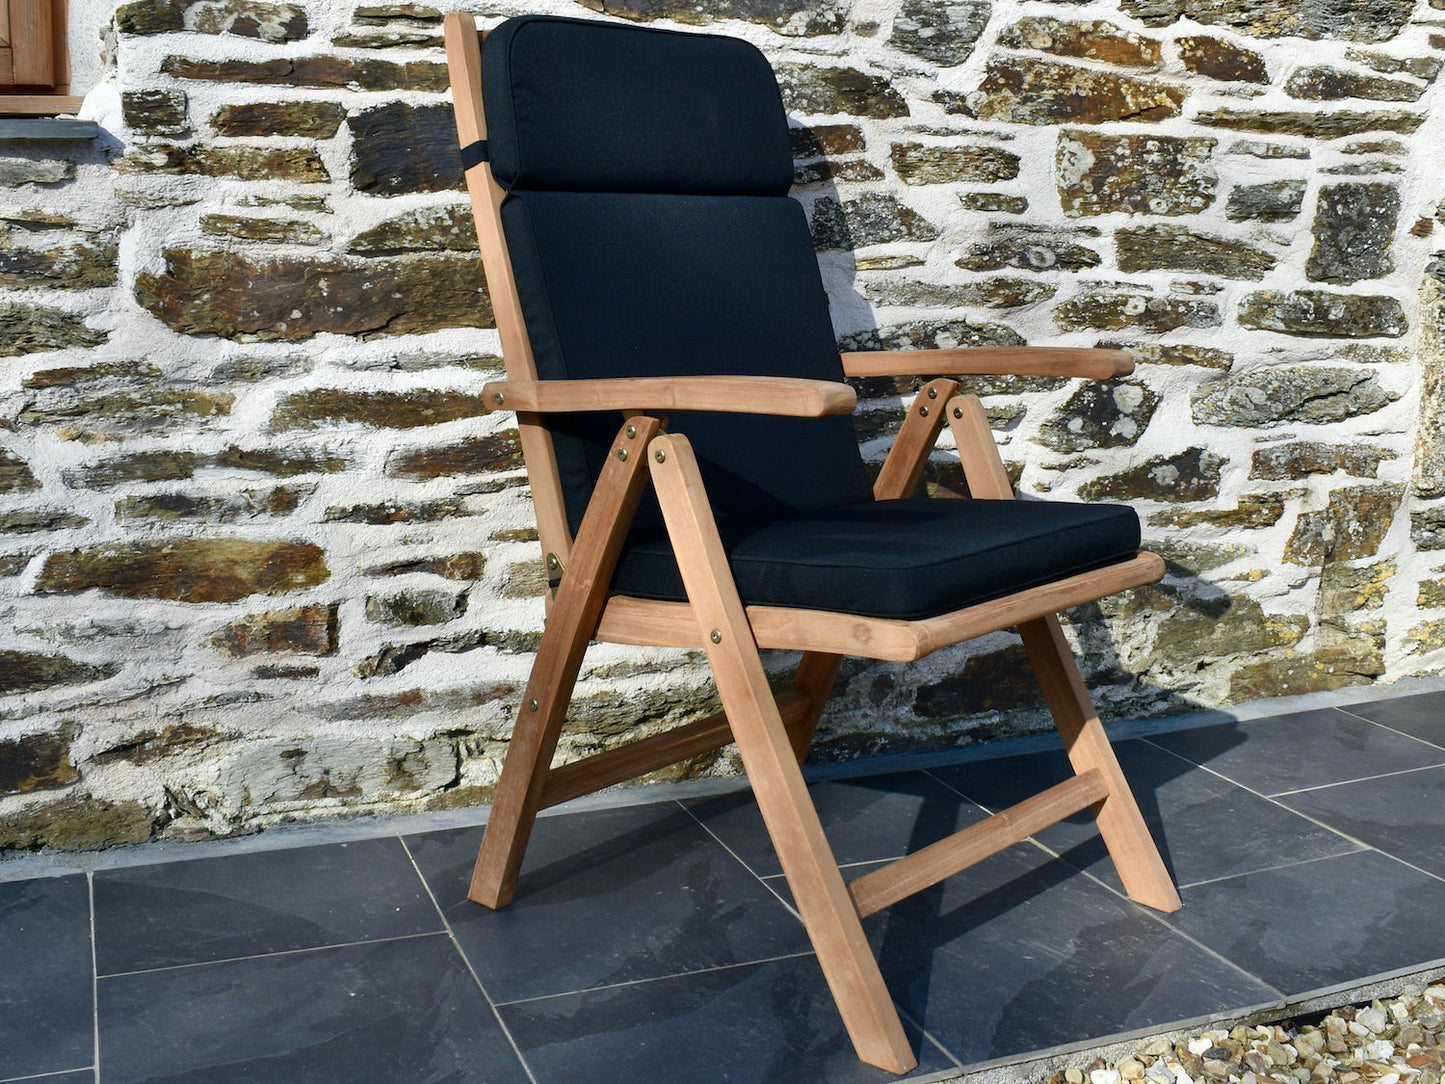 Black colour outdoor cushion for a garden recliner chair